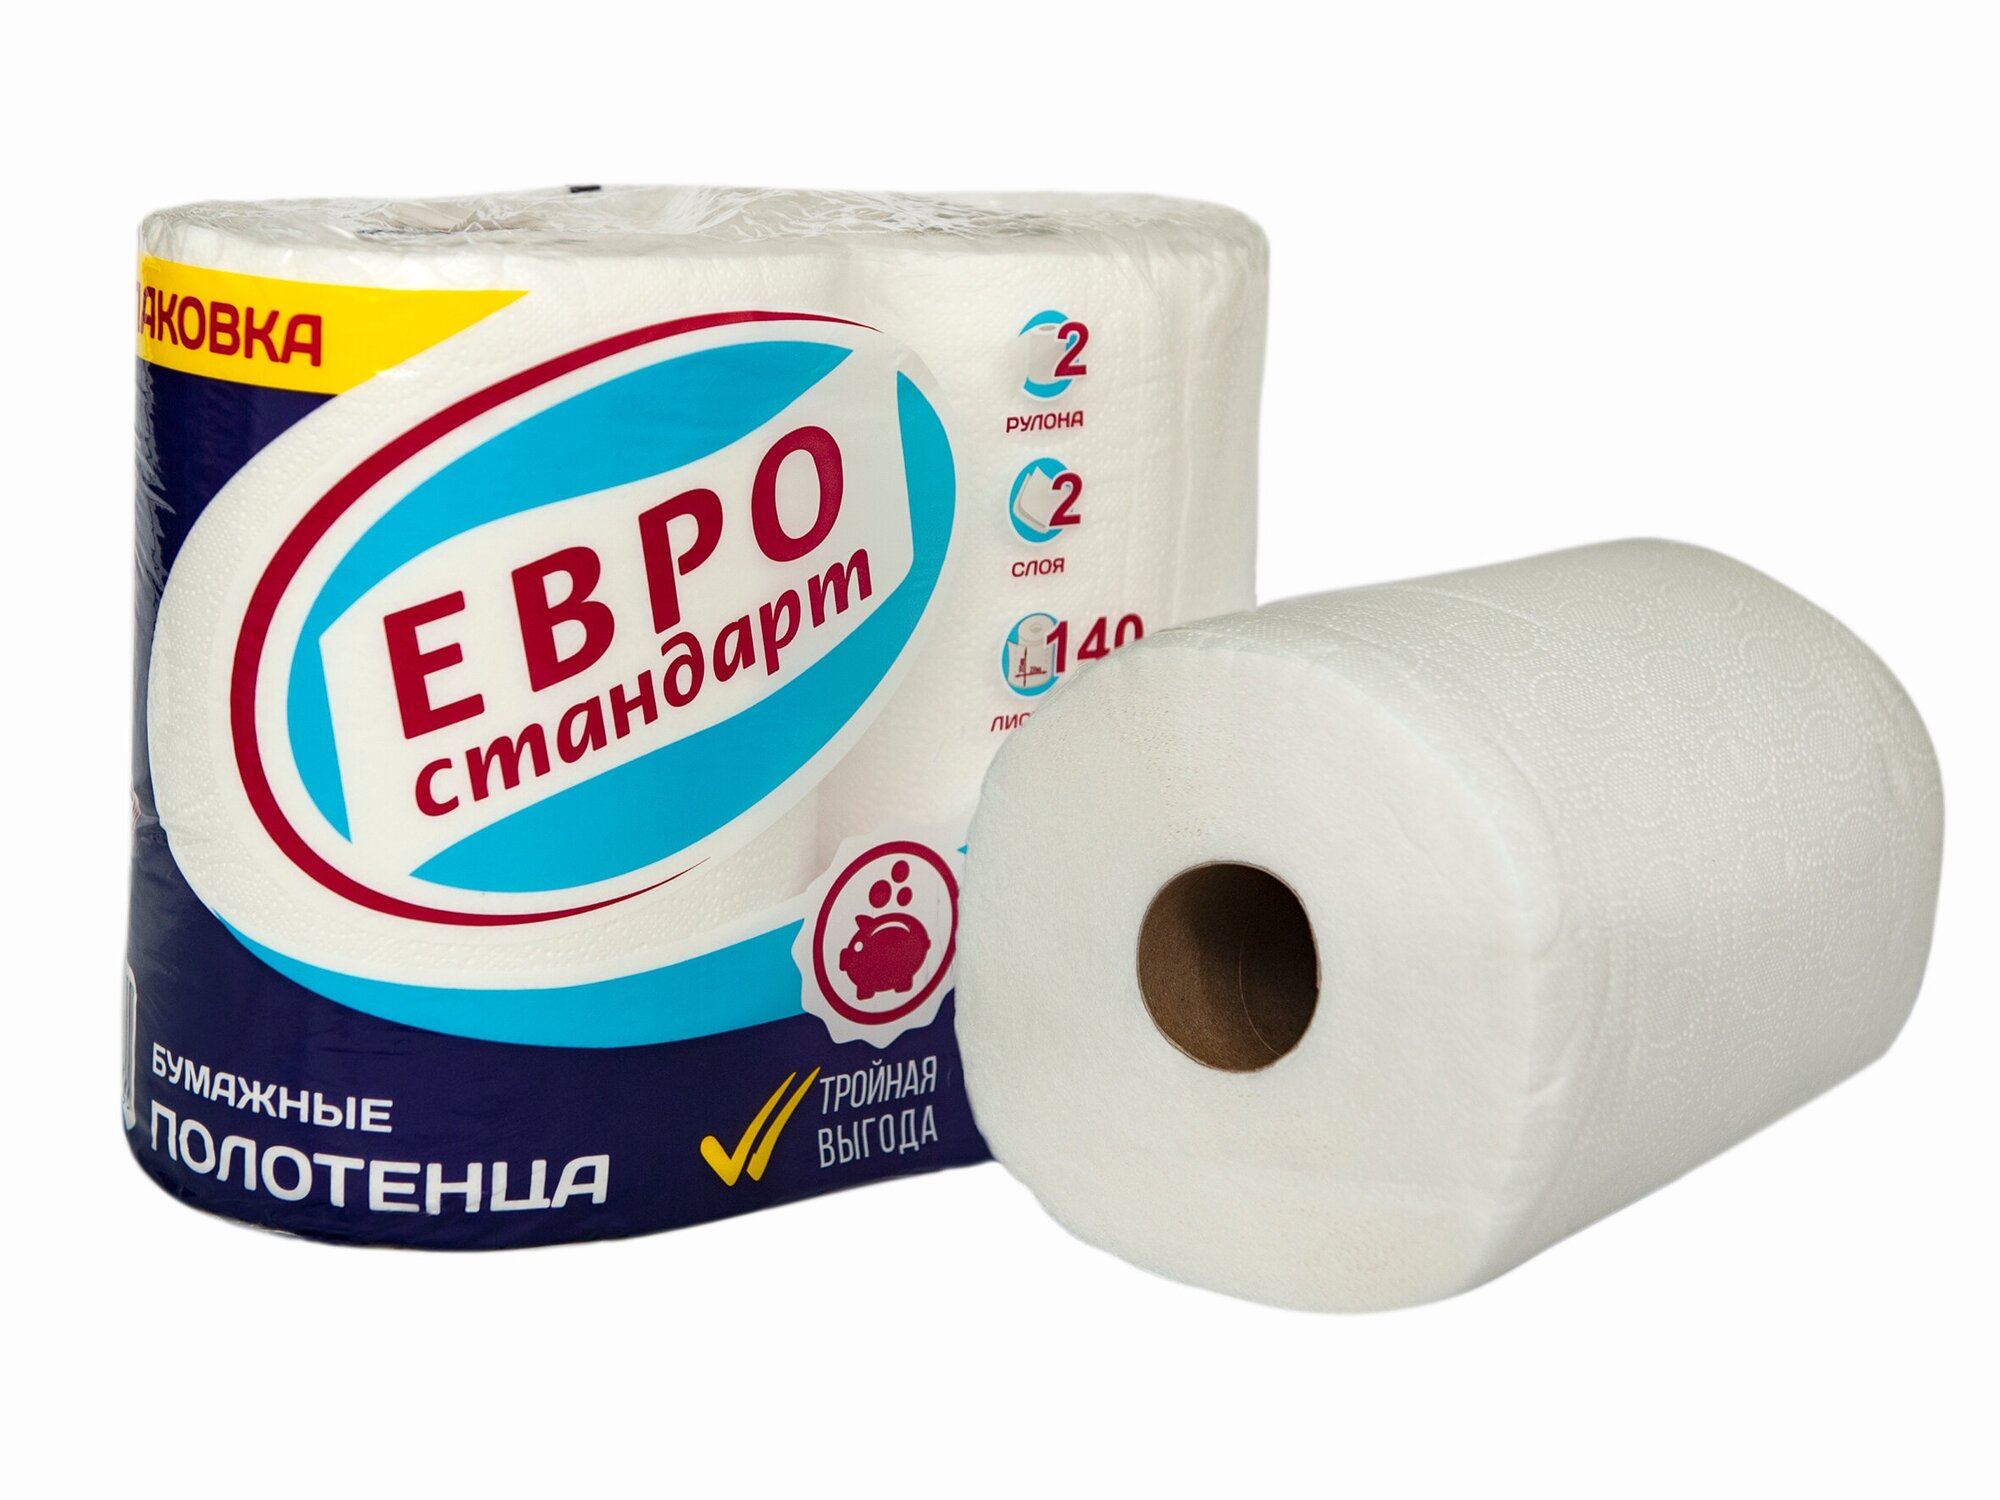 Бумажные полотенца Евро Стандарт 2 рулона 2 слоя по 32м Семья и Комфорт - фото №3